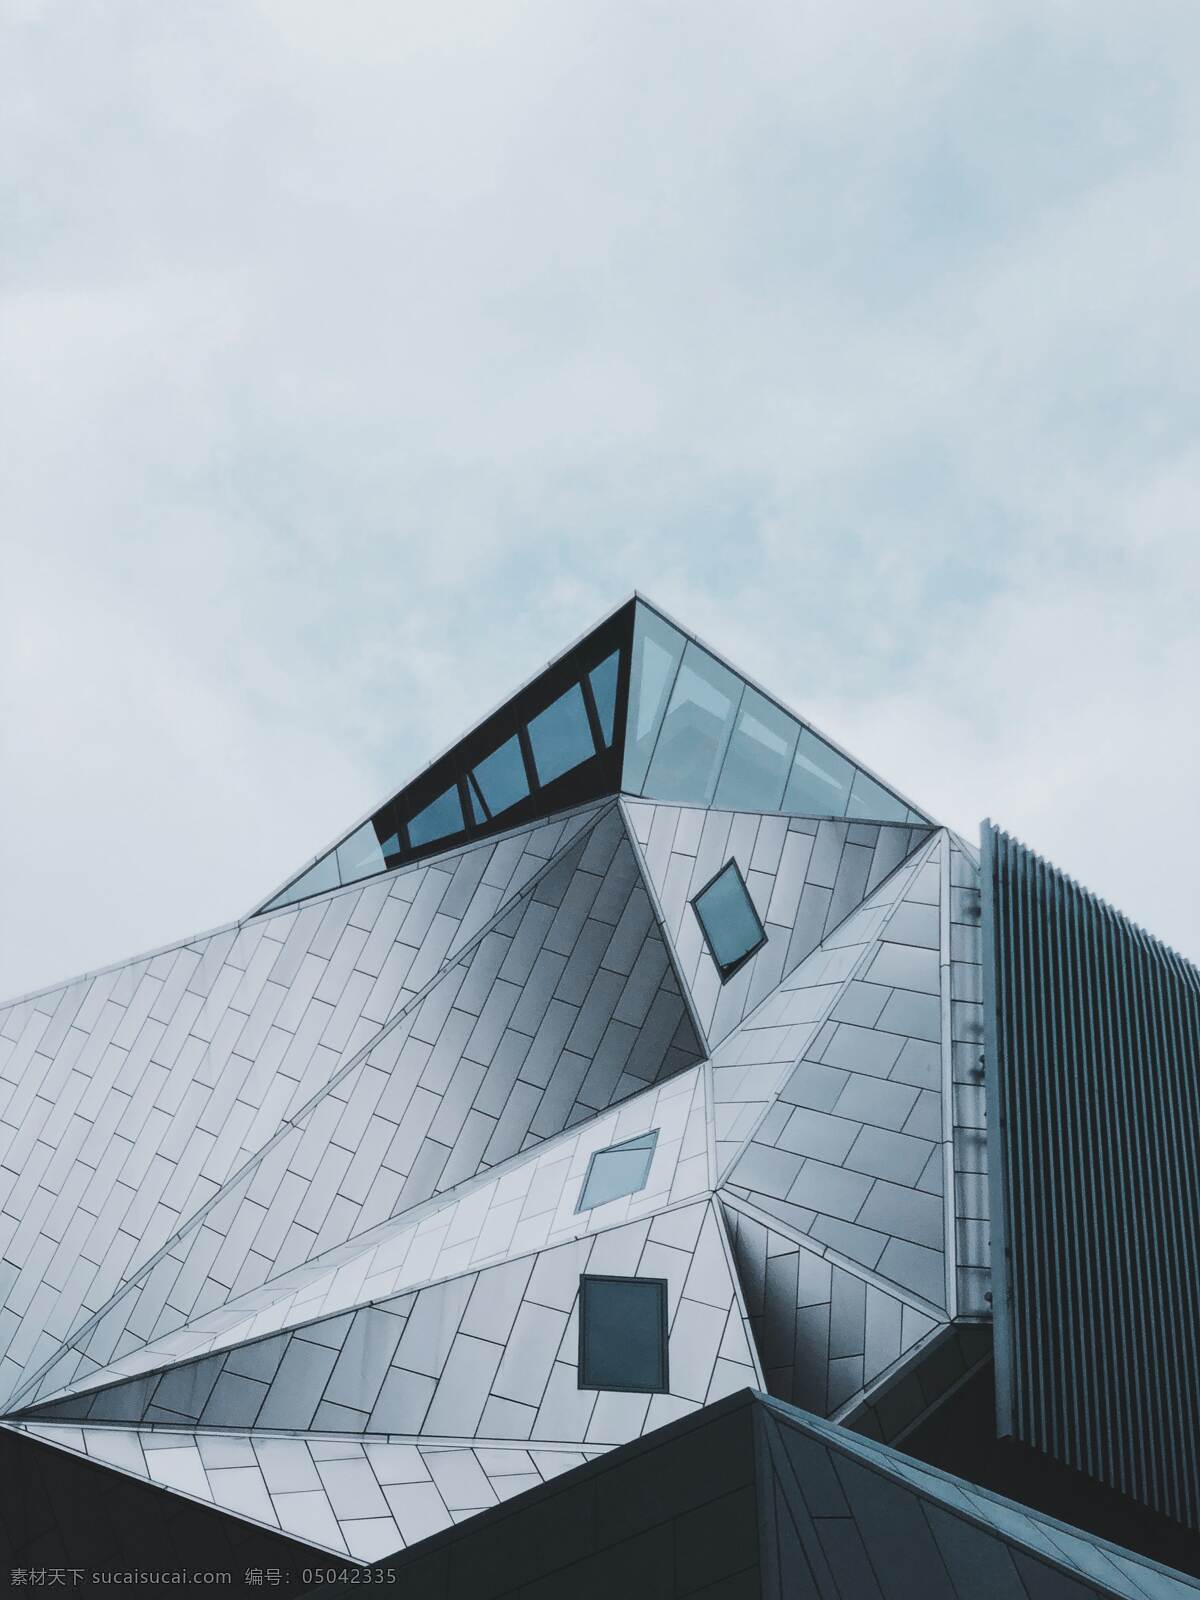 科幻建筑 科幻 几何线条 多边形建筑 玻璃建筑 灰色房子 三角形建筑 科技 水泥灰 灰色 自然景观 建筑景观